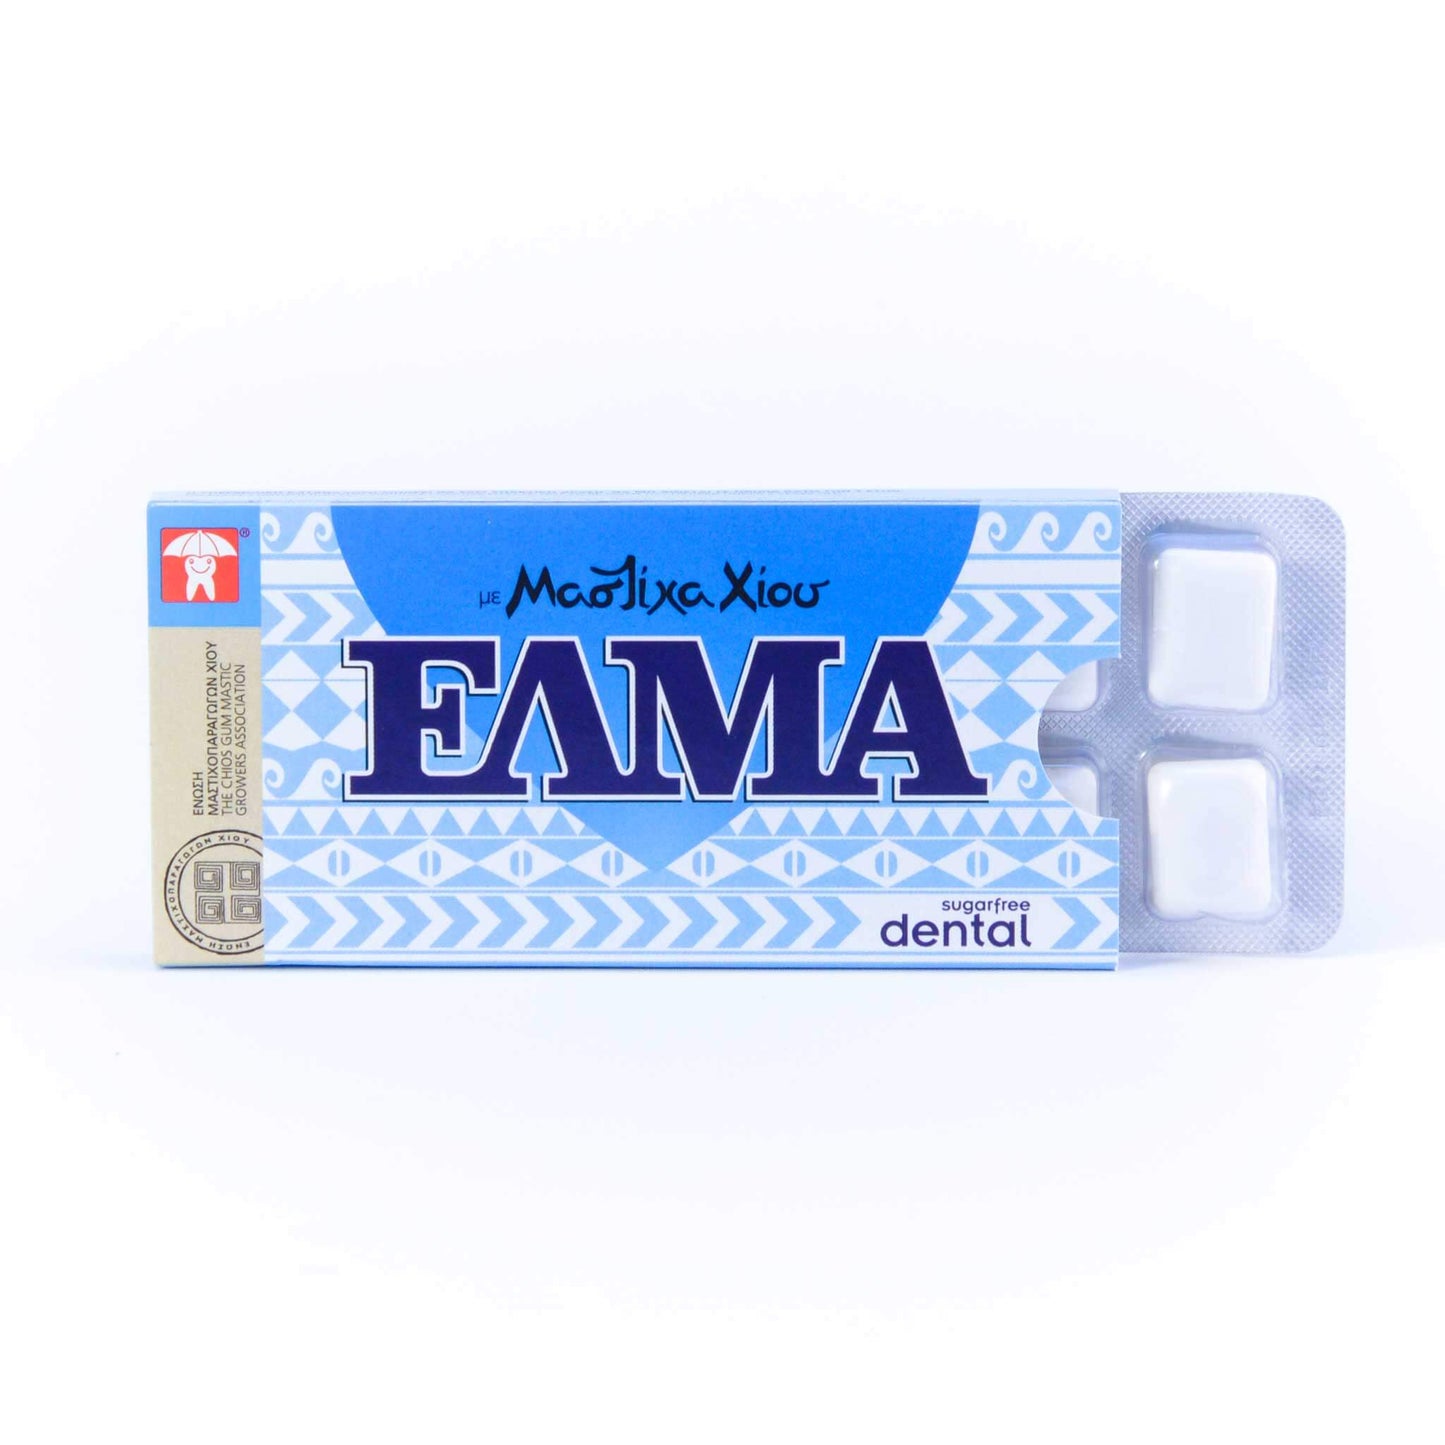 ELMA Dental: mit Mastix, ohne Zucker (Box)